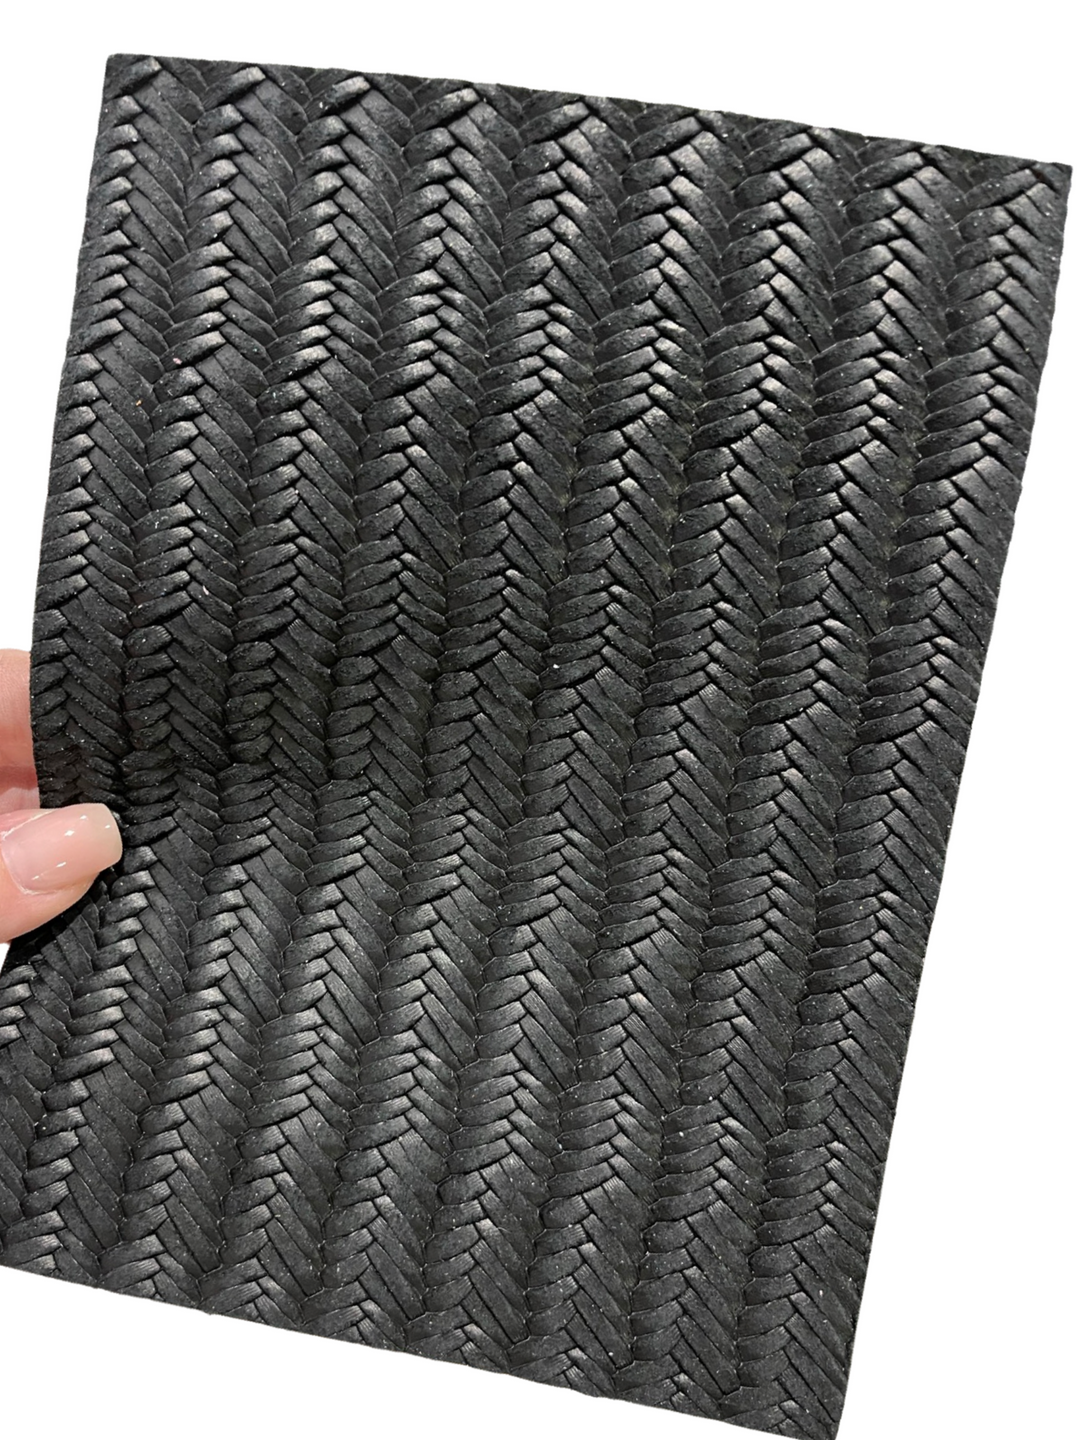 Black Neutral Fishtail Braided Genuine Leather Sheet for Earrings